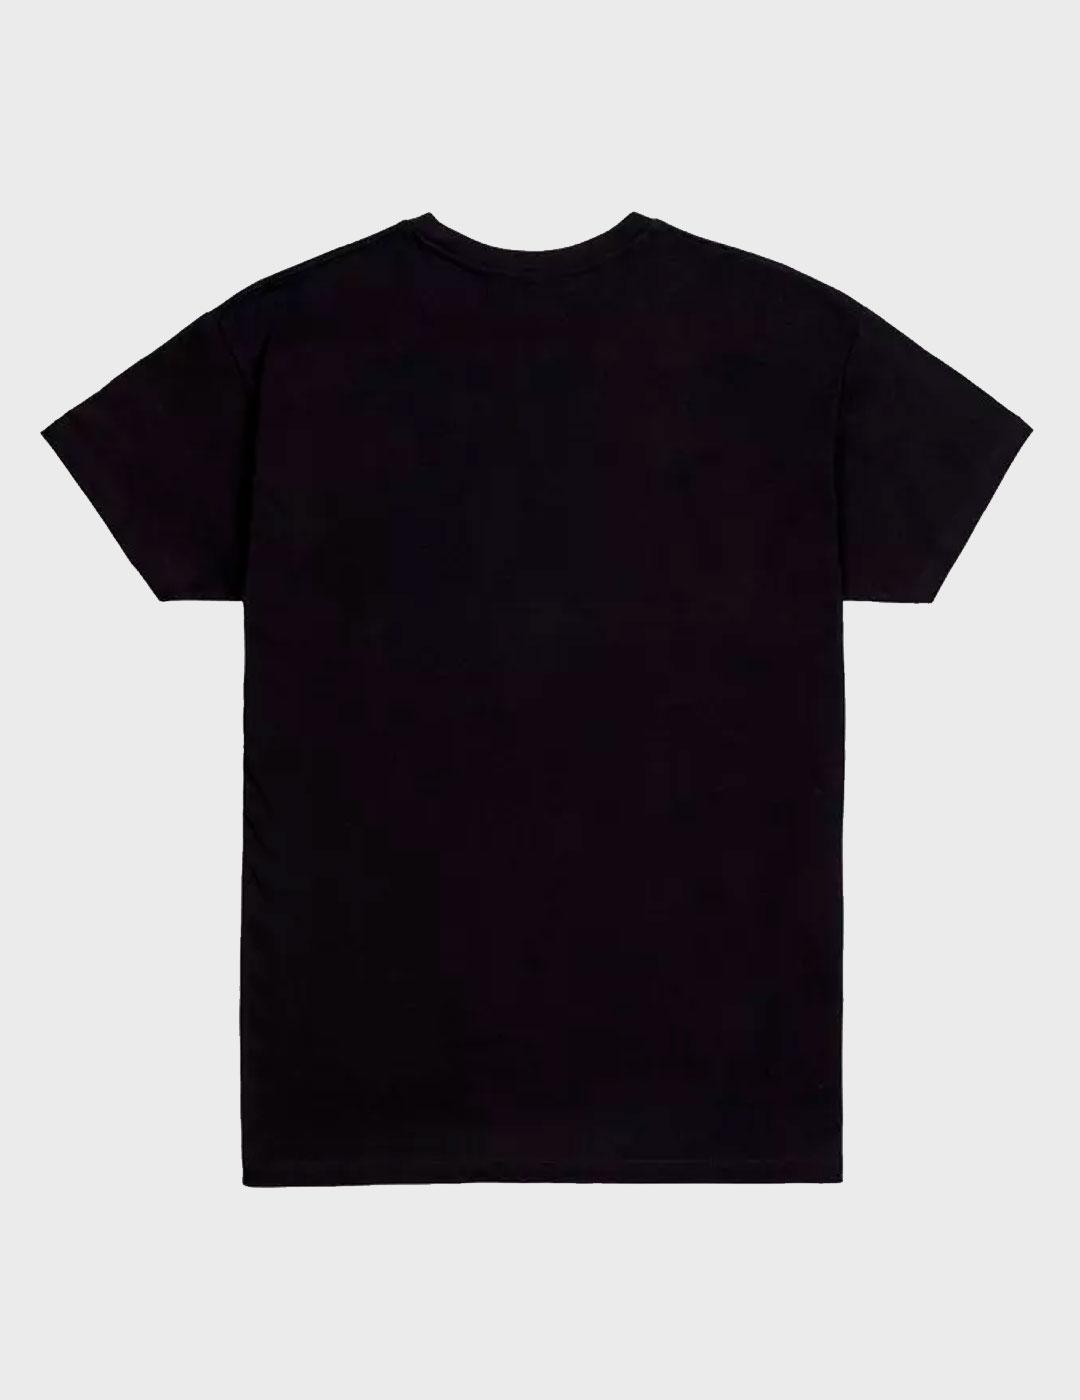 Camiseta Morrison Original negra unisex